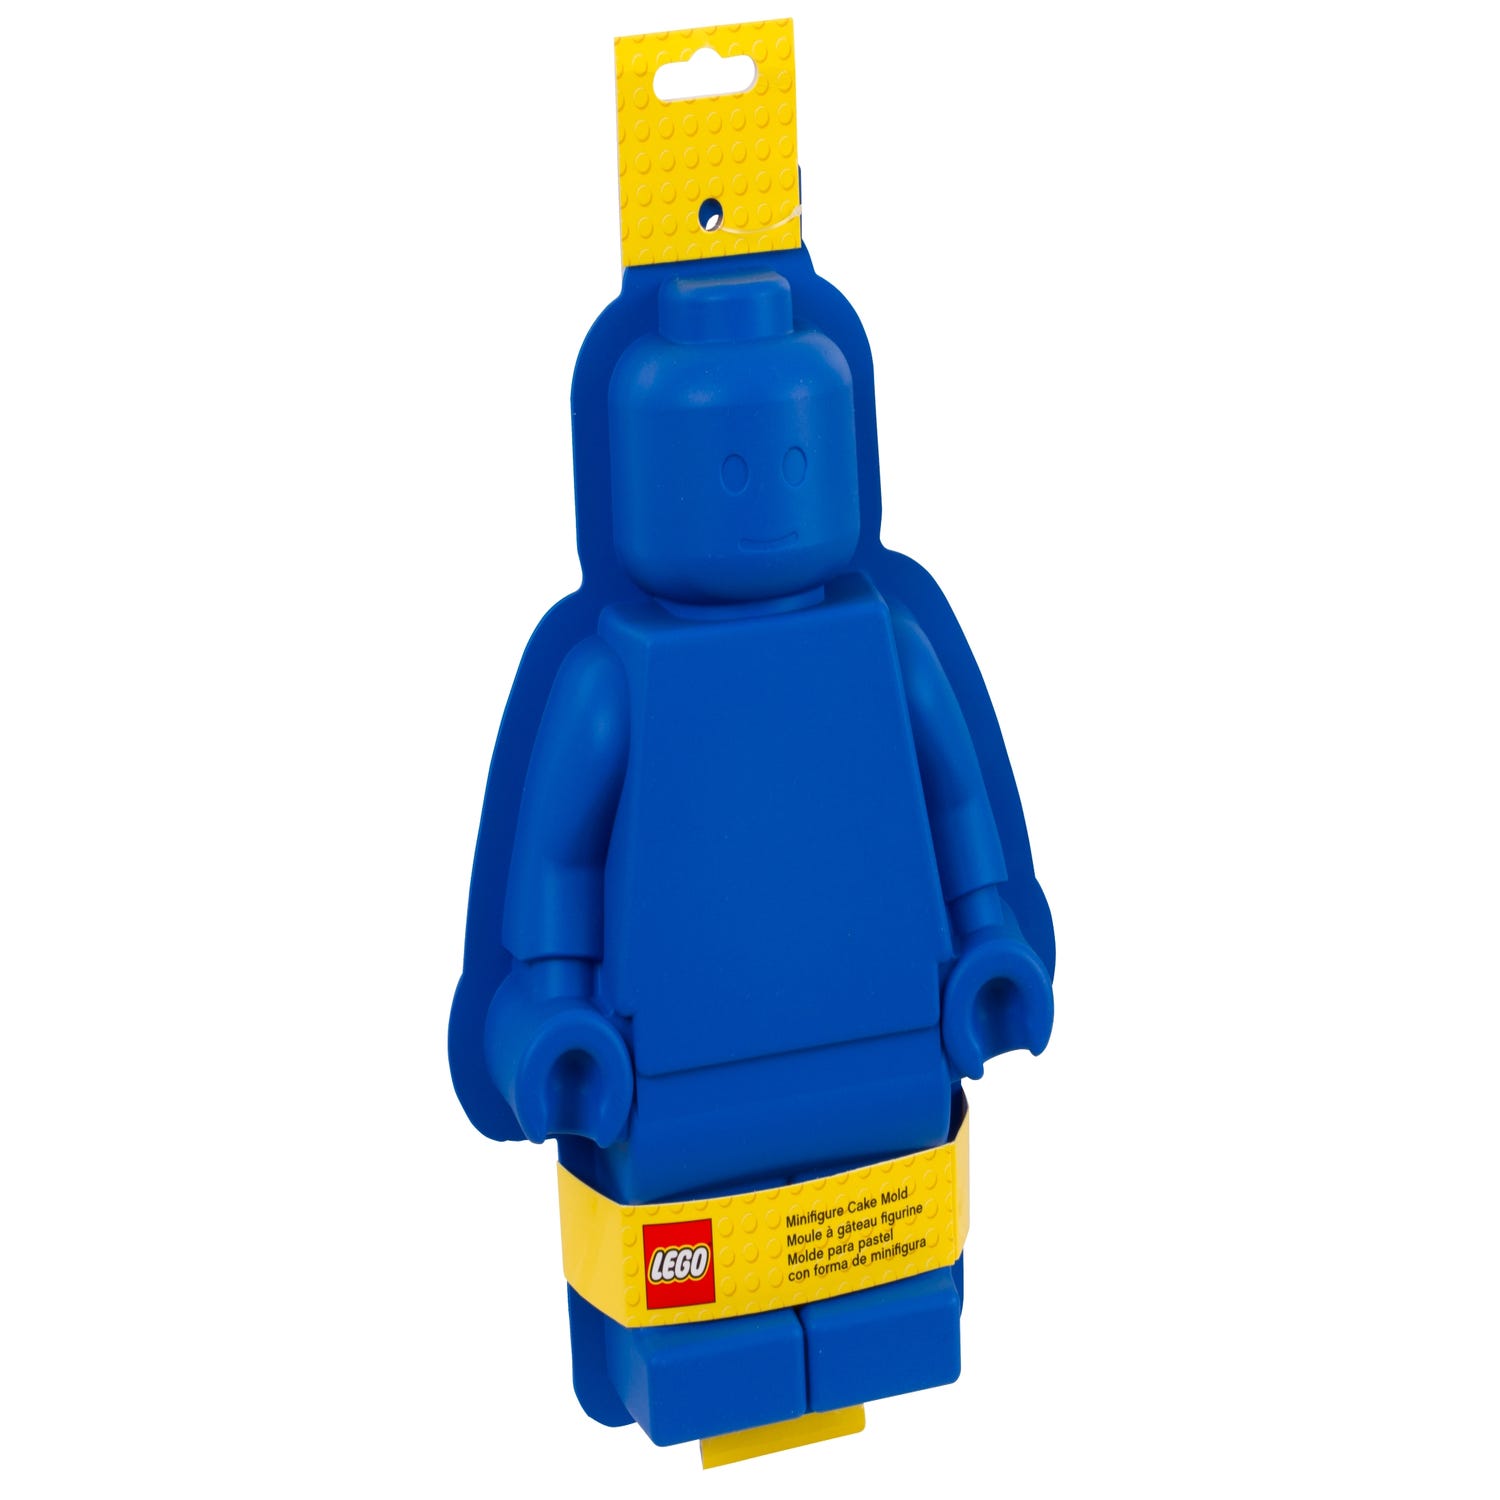 letterlijk noodsituatie Meevoelen Minifigure Cake Mold 853575 | UNKNOWN | Buy online at the Official LEGO®  Shop LU